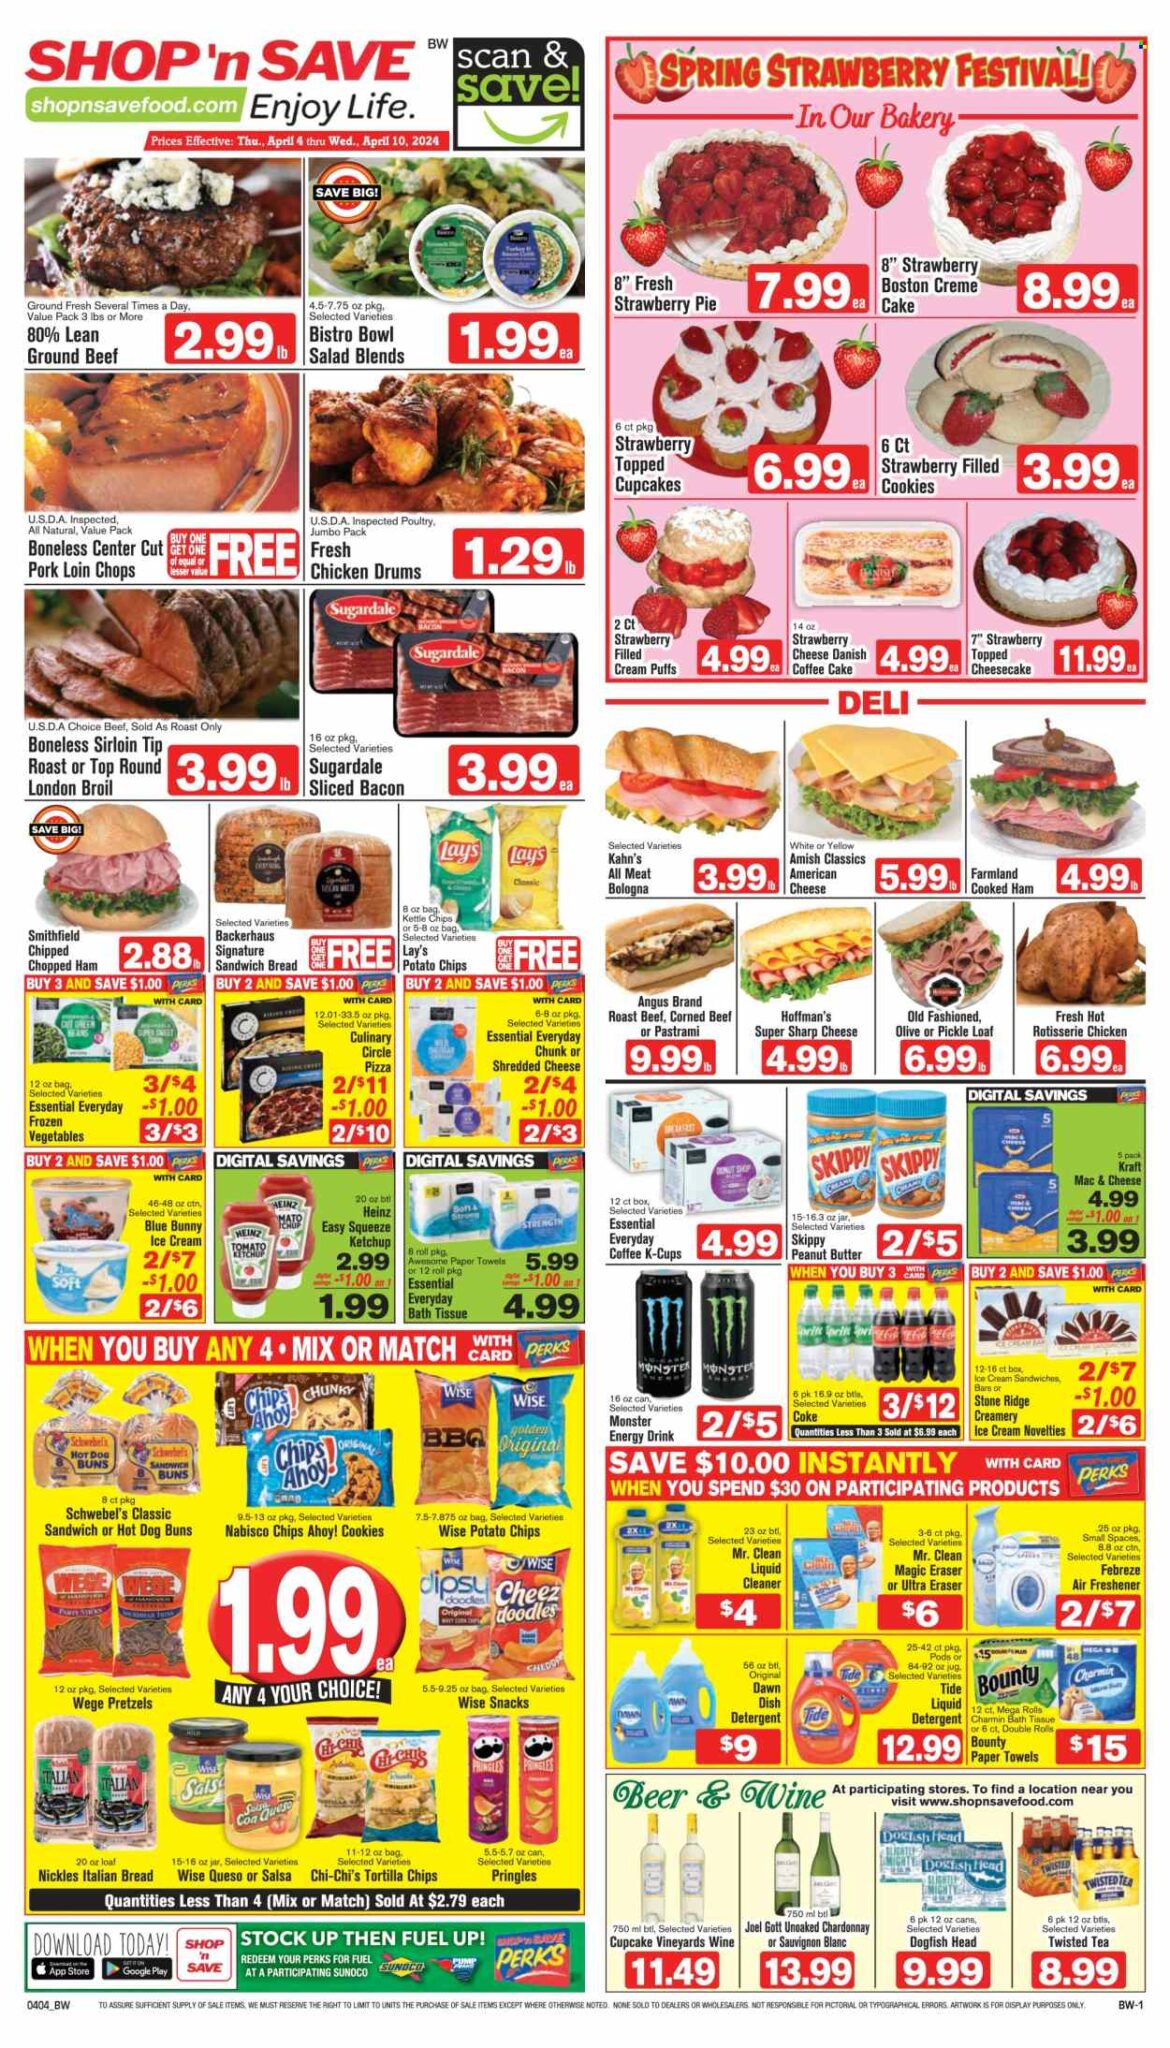 Shop 'n Save Weekly Flyer